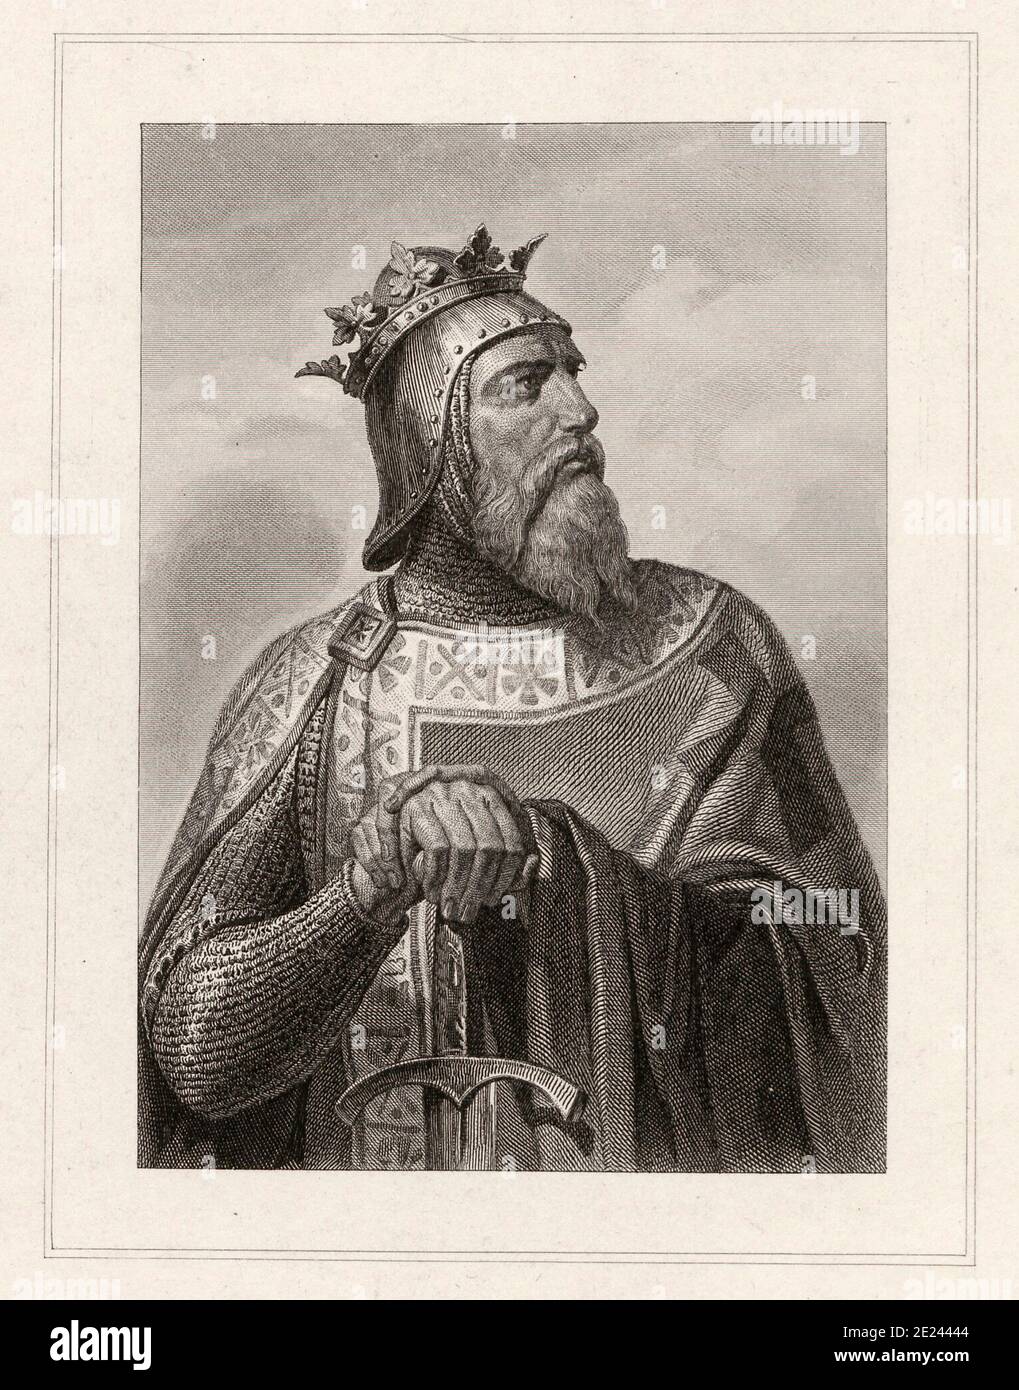 Roberto il Guiscardo (1015 - 1085) era un avventuriero normanno ricordato per la conquista del sud Italia e della Sicilia. Robert è nato nell'Hauteville fa Foto Stock